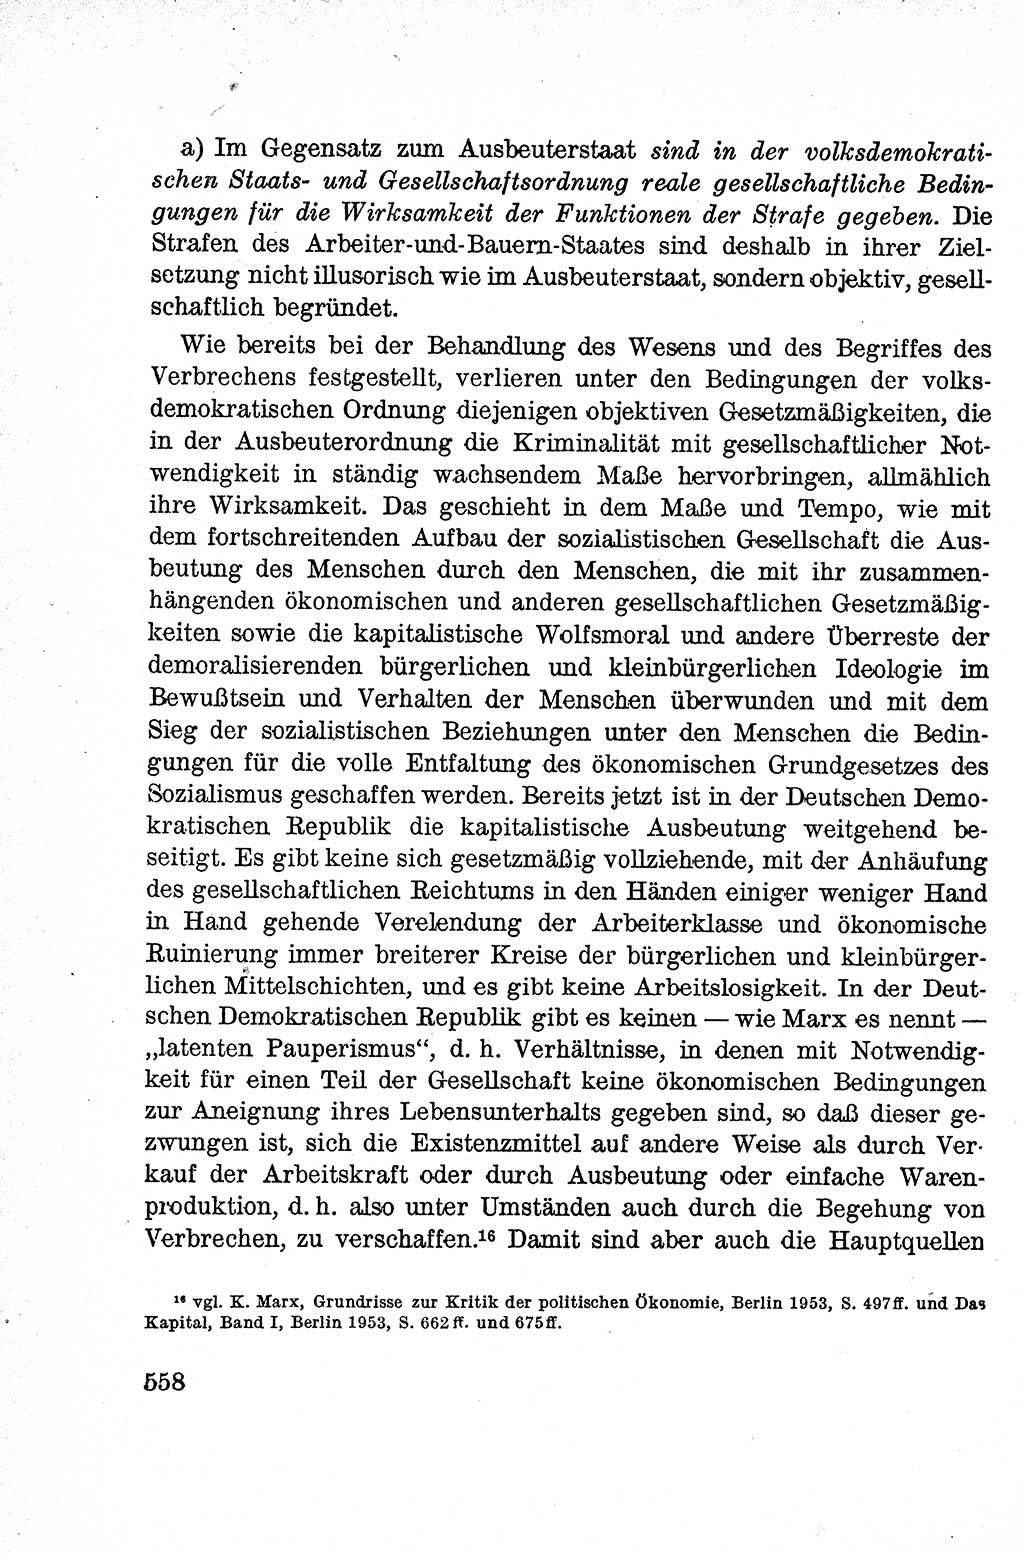 Lehrbuch des Strafrechts der Deutschen Demokratischen Republik (DDR), Allgemeiner Teil 1959, Seite 558 (Lb. Strafr. DDR AT 1959, S. 558)